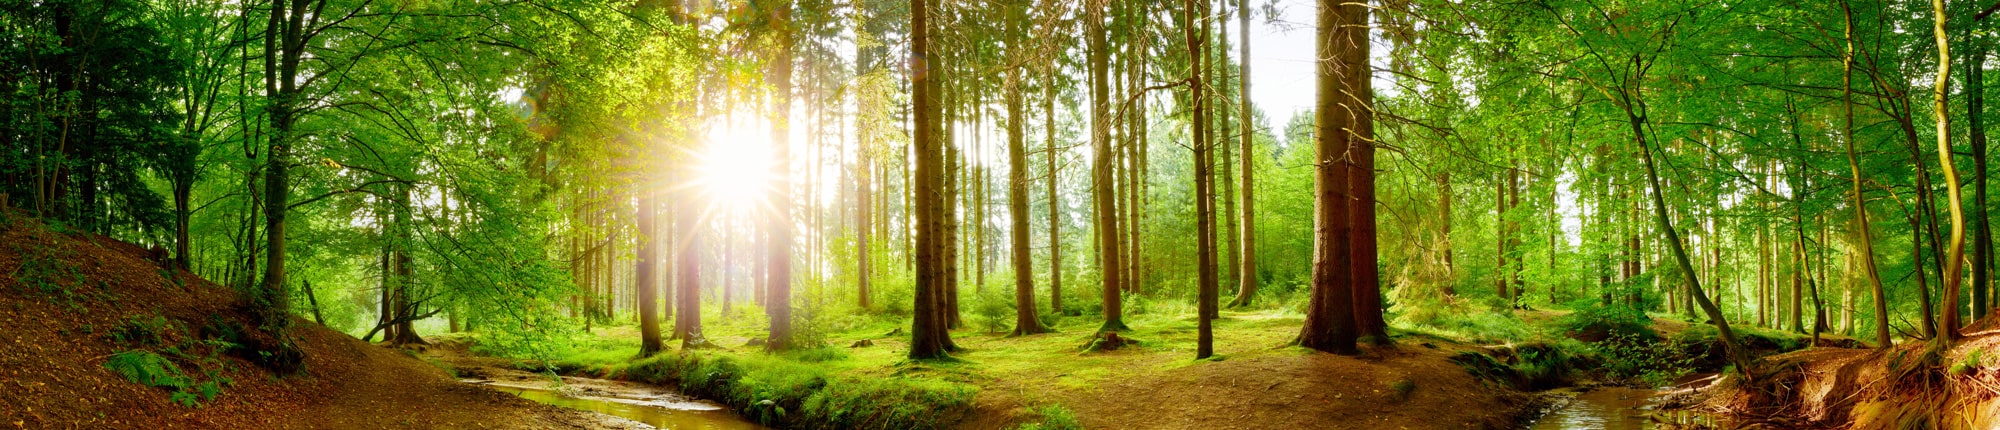 Stiftung Erdheilungsplätze Wald